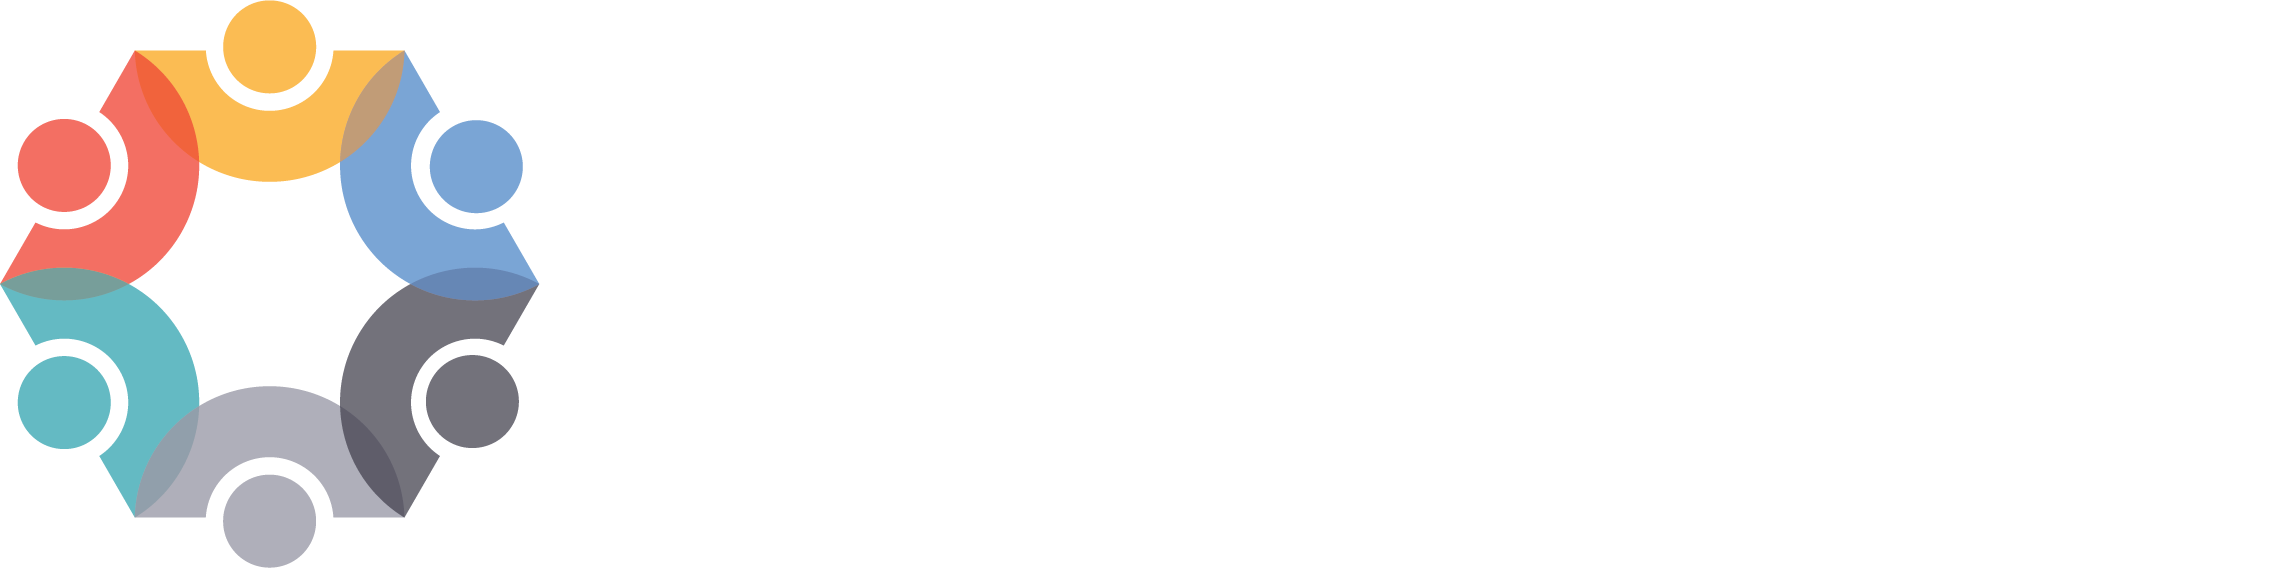 California Tobacco Endgame Center logo